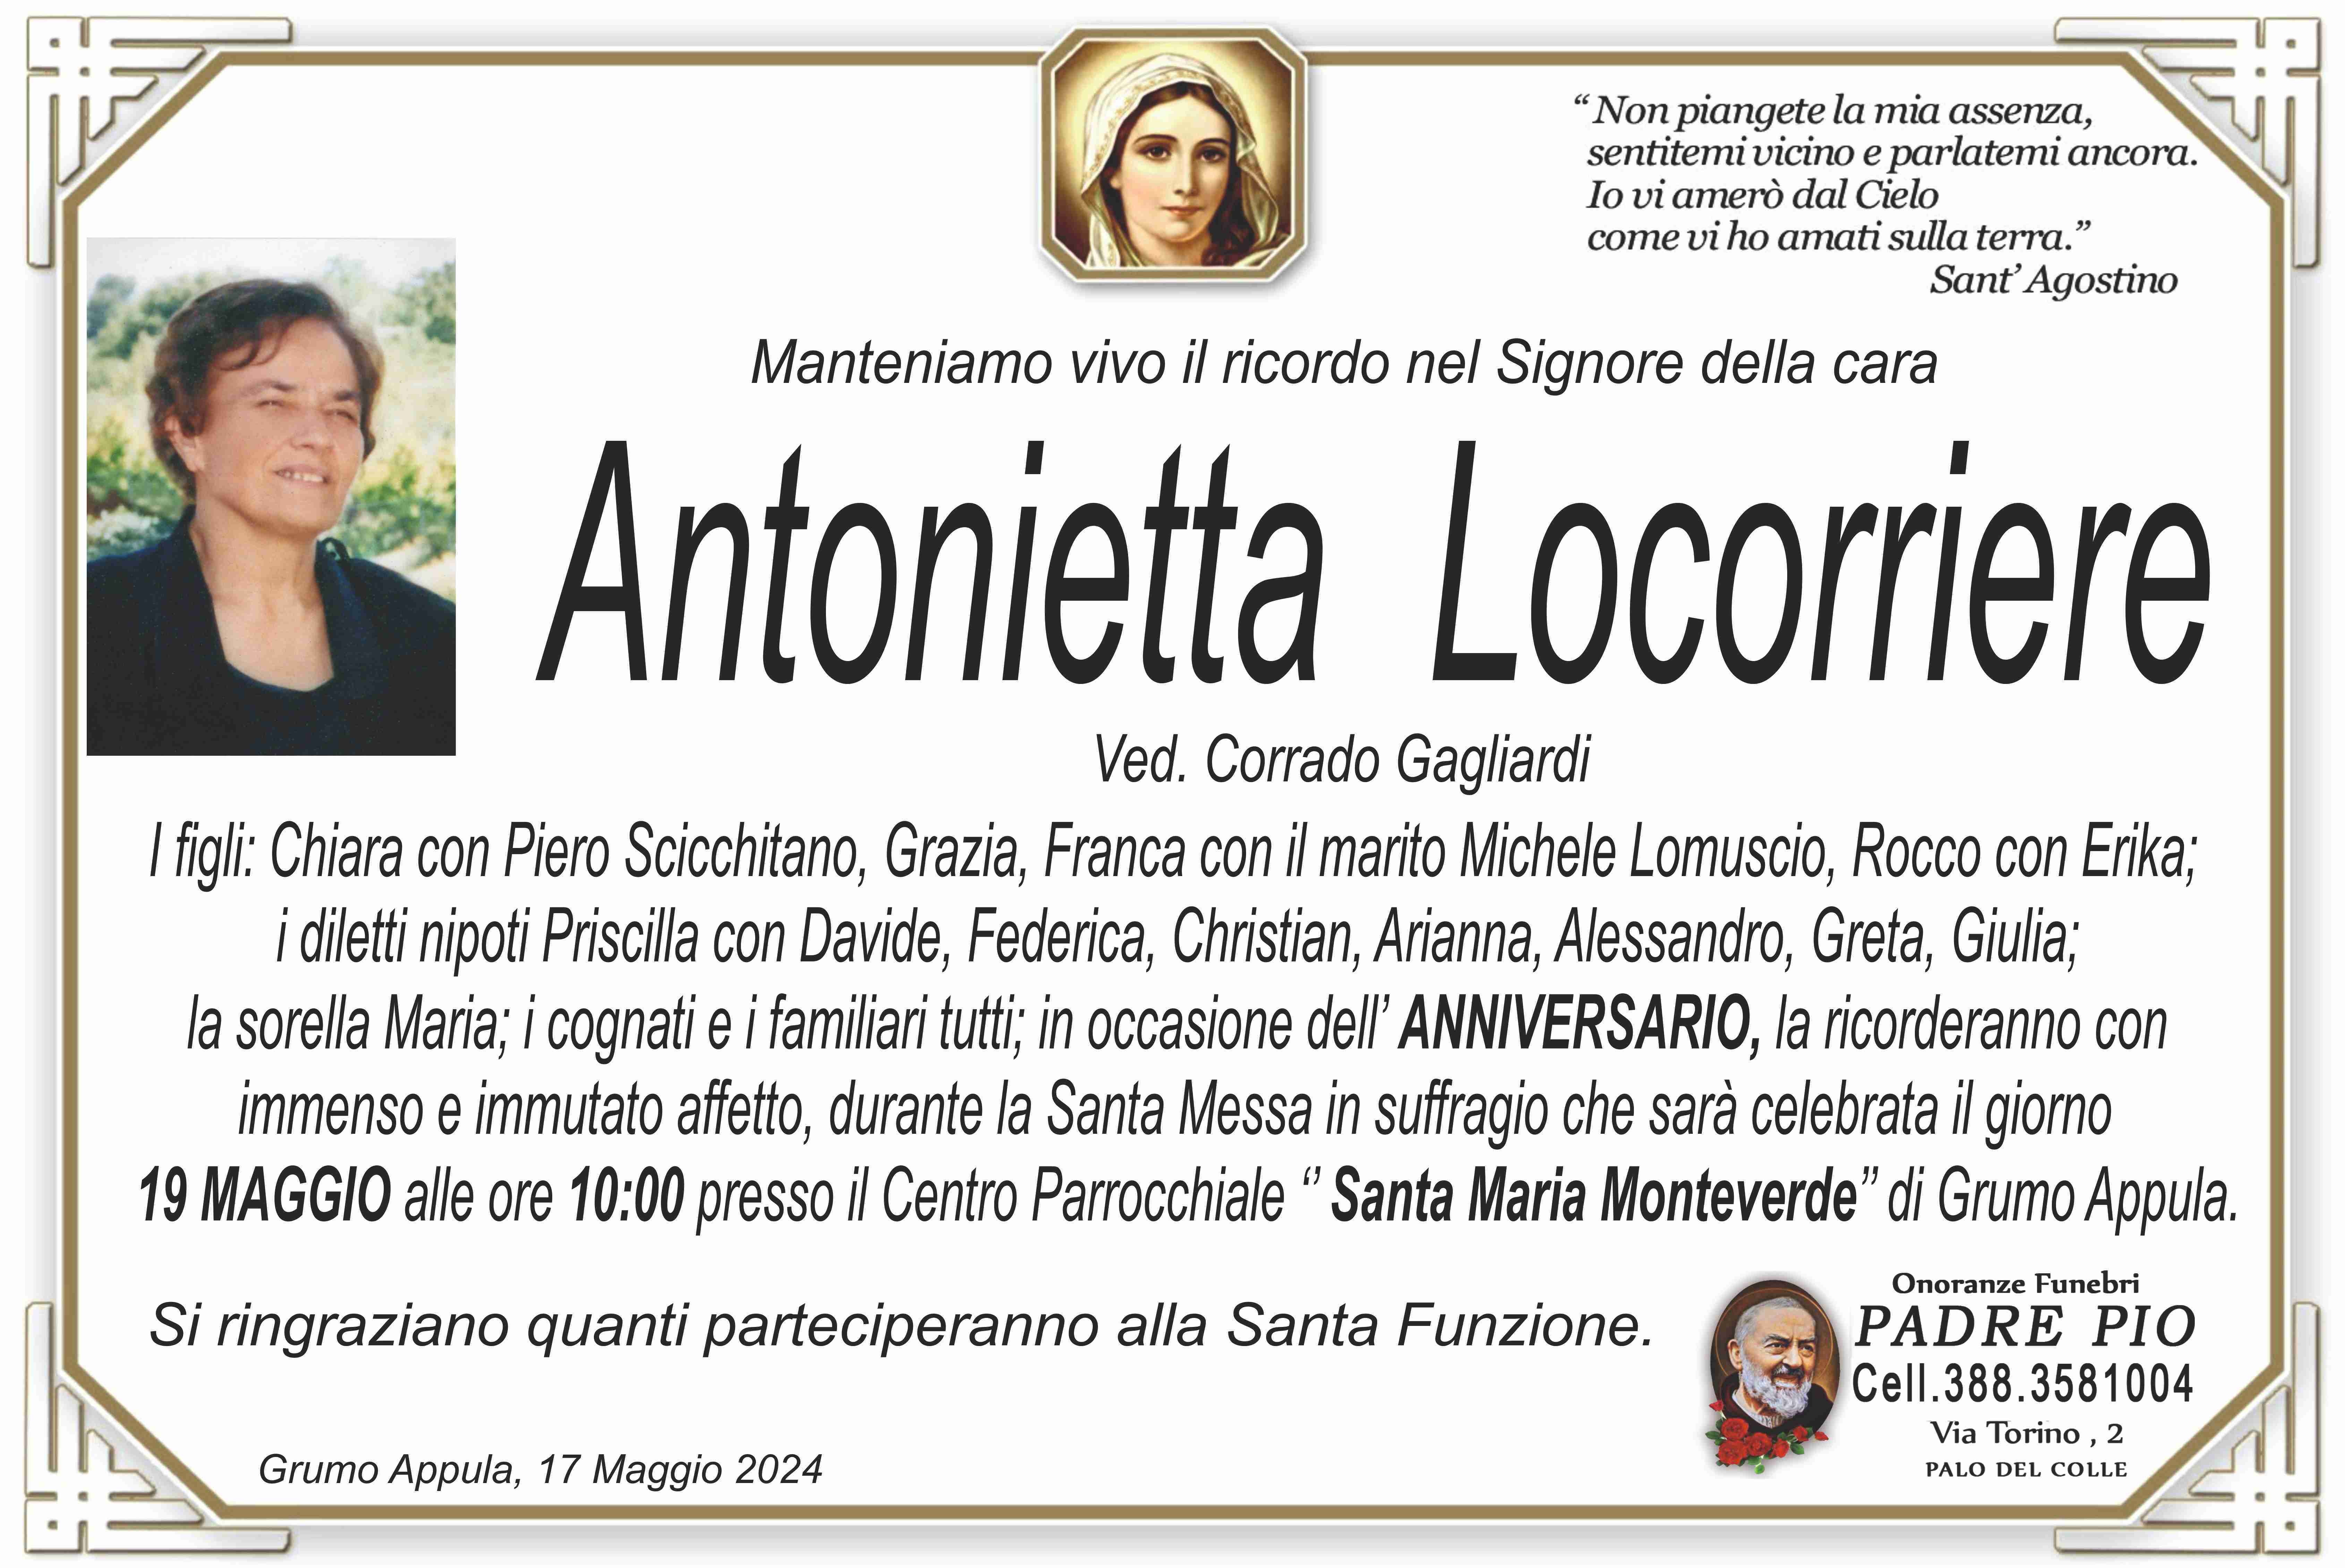 Antonietta Locorriere